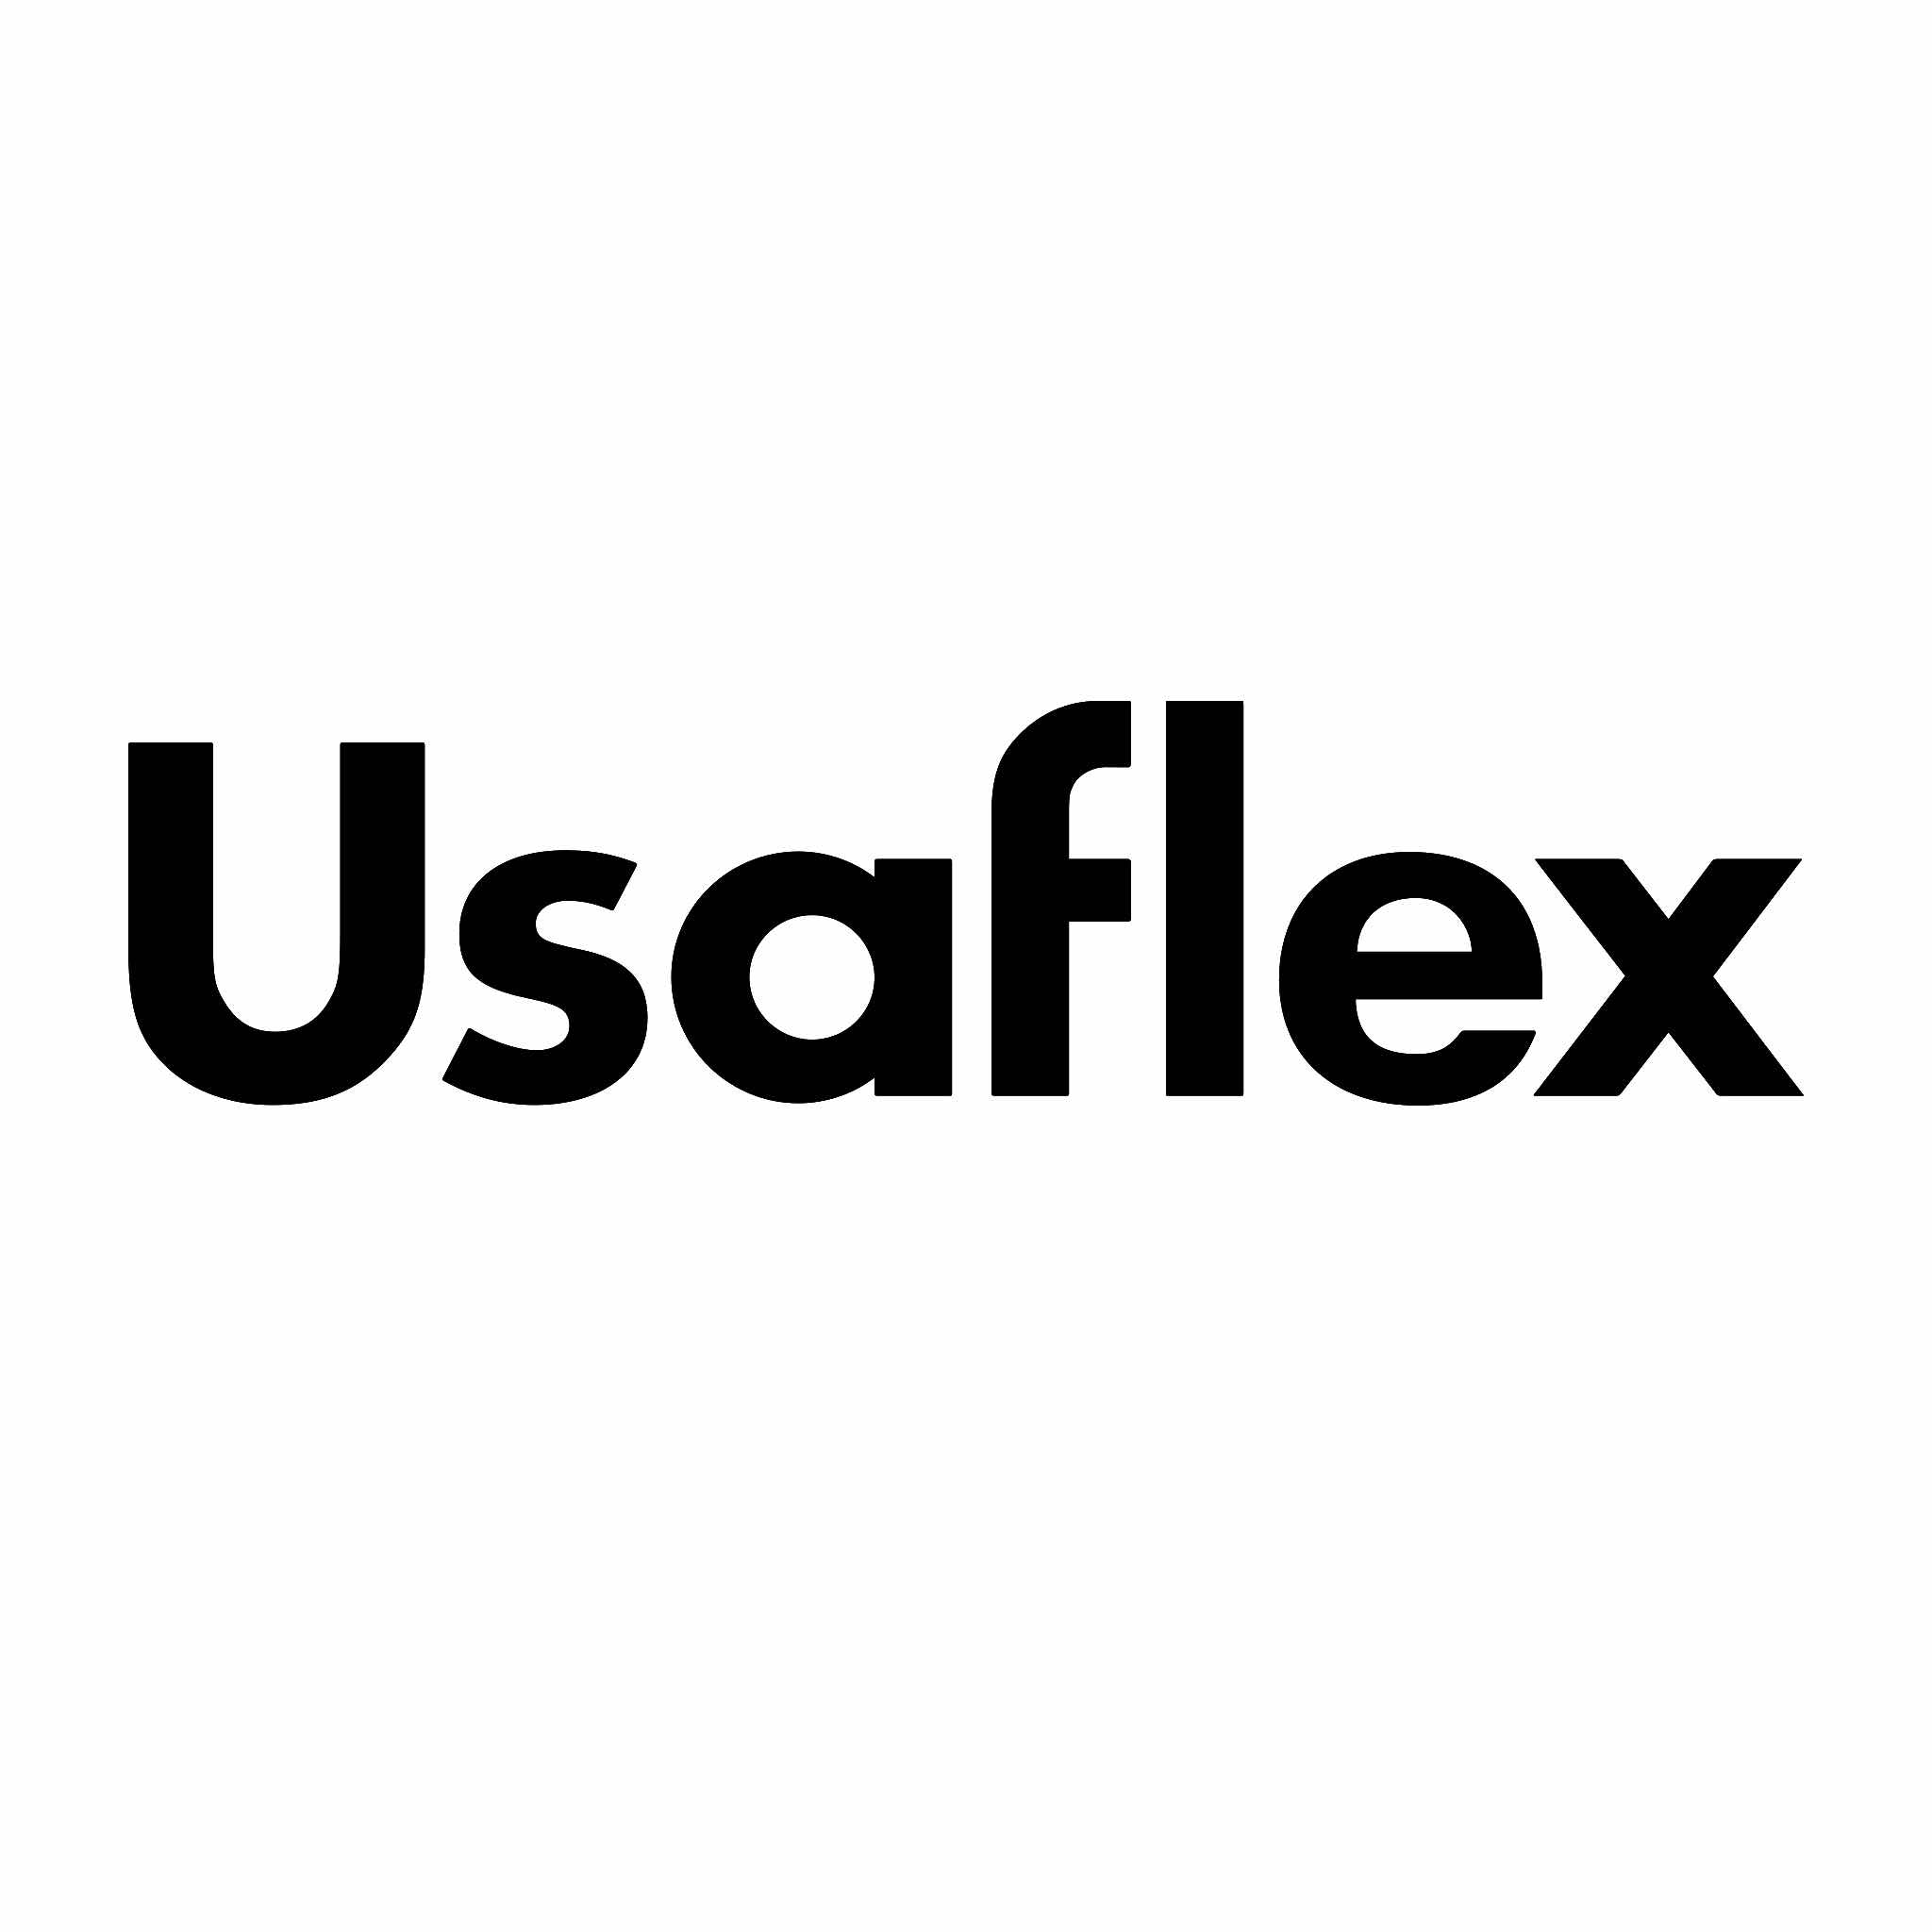 Usaflex Bolivia